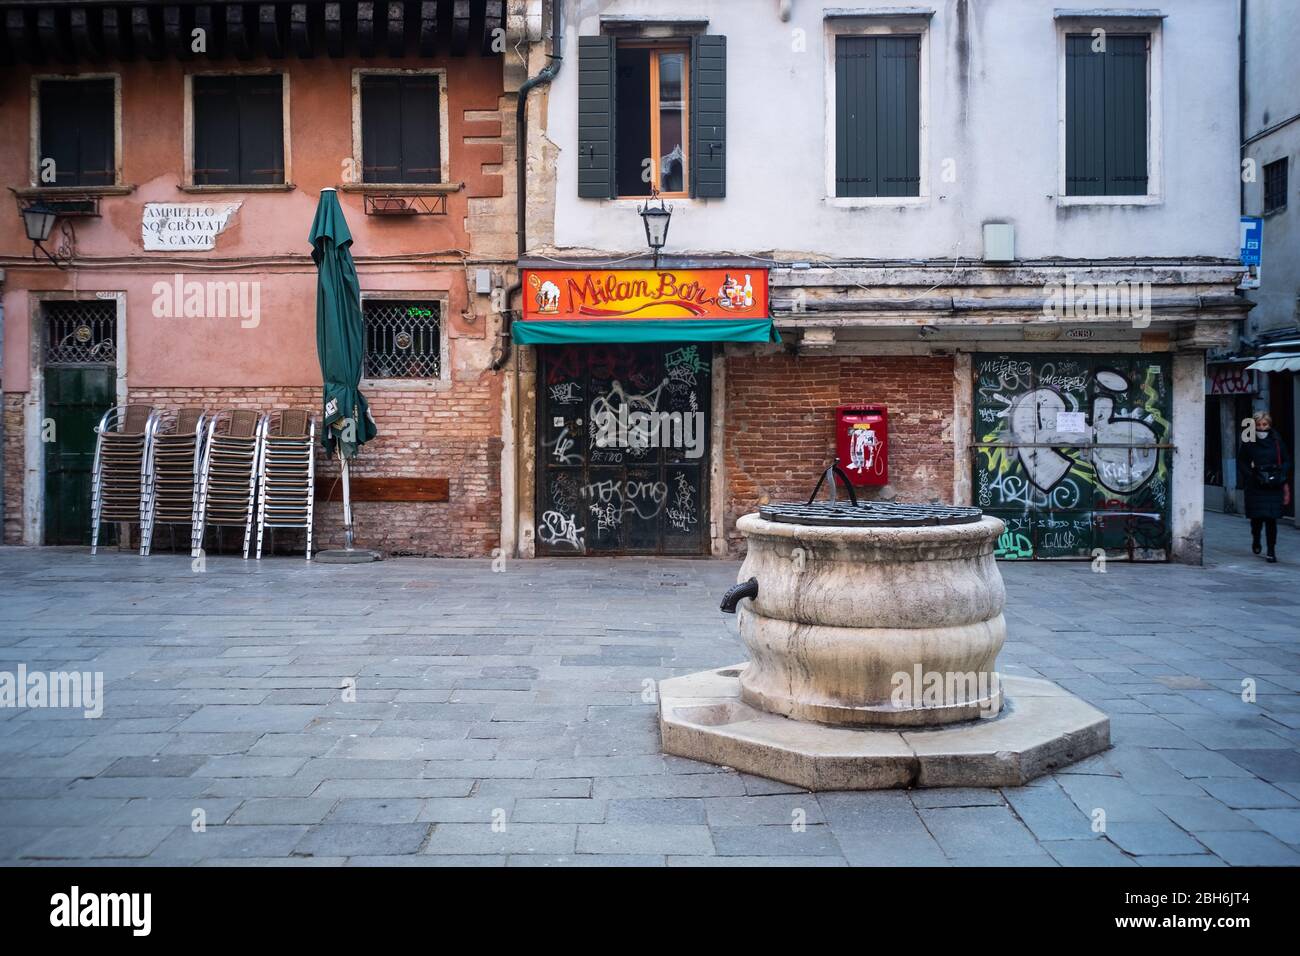 VENEZIA, ITALIA - APRILE 2020: Una piazza vuota e attività chiuse durante la chiusura nazionale per la pandemia Covid-19. Foto Stock